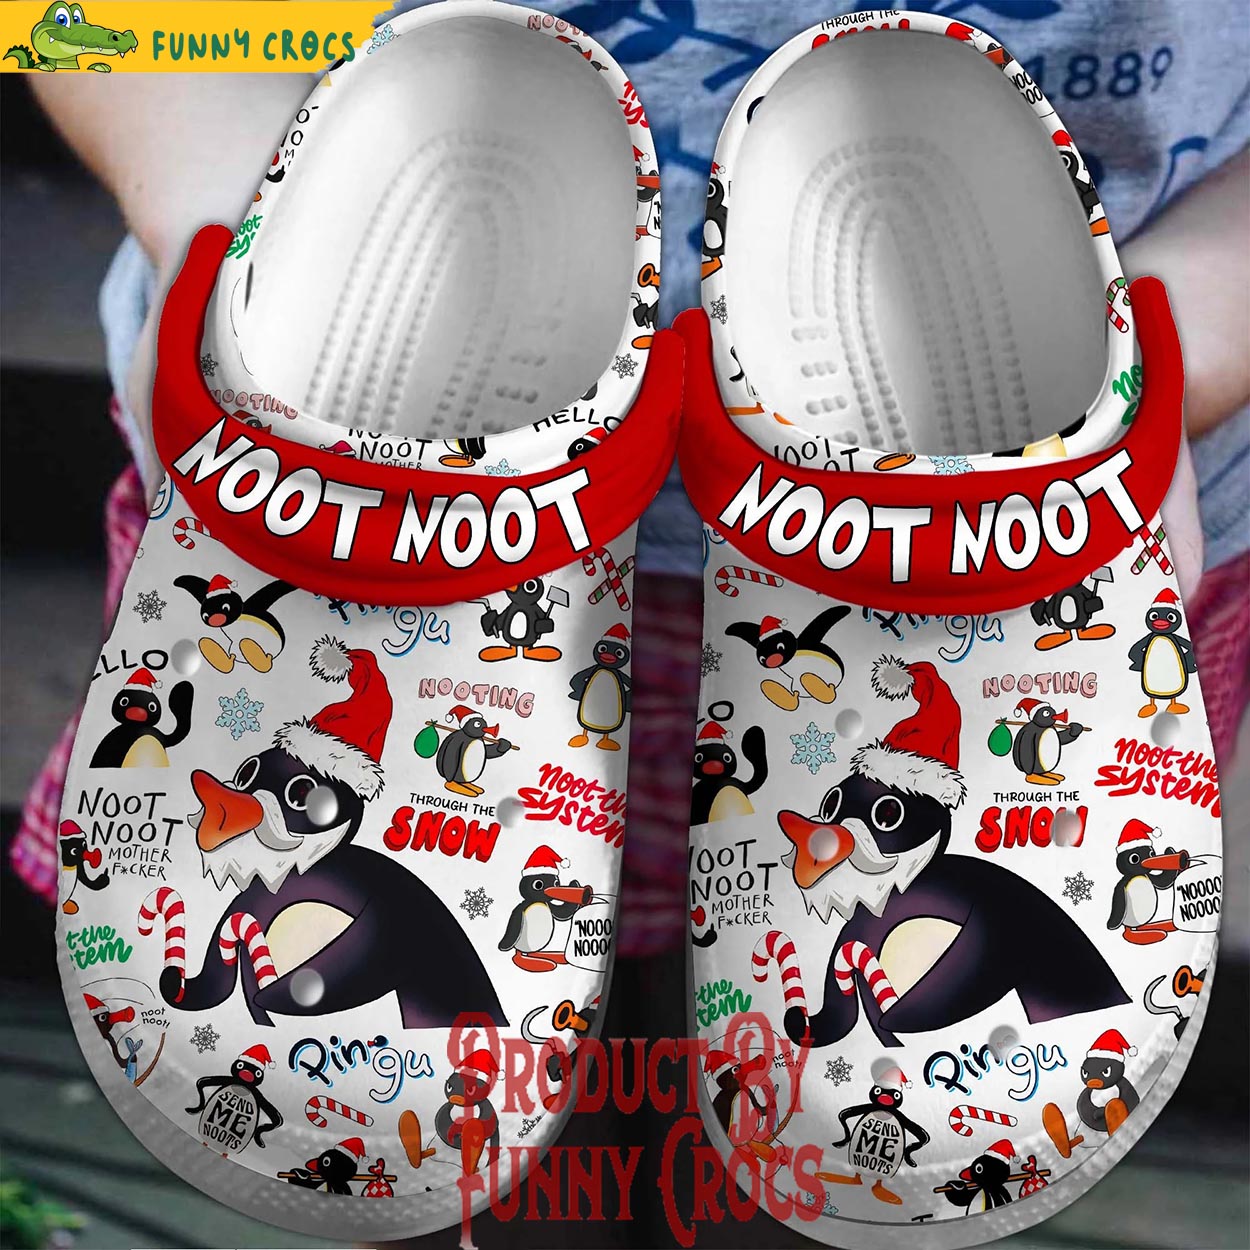 Noot Noot CG5 Crocs